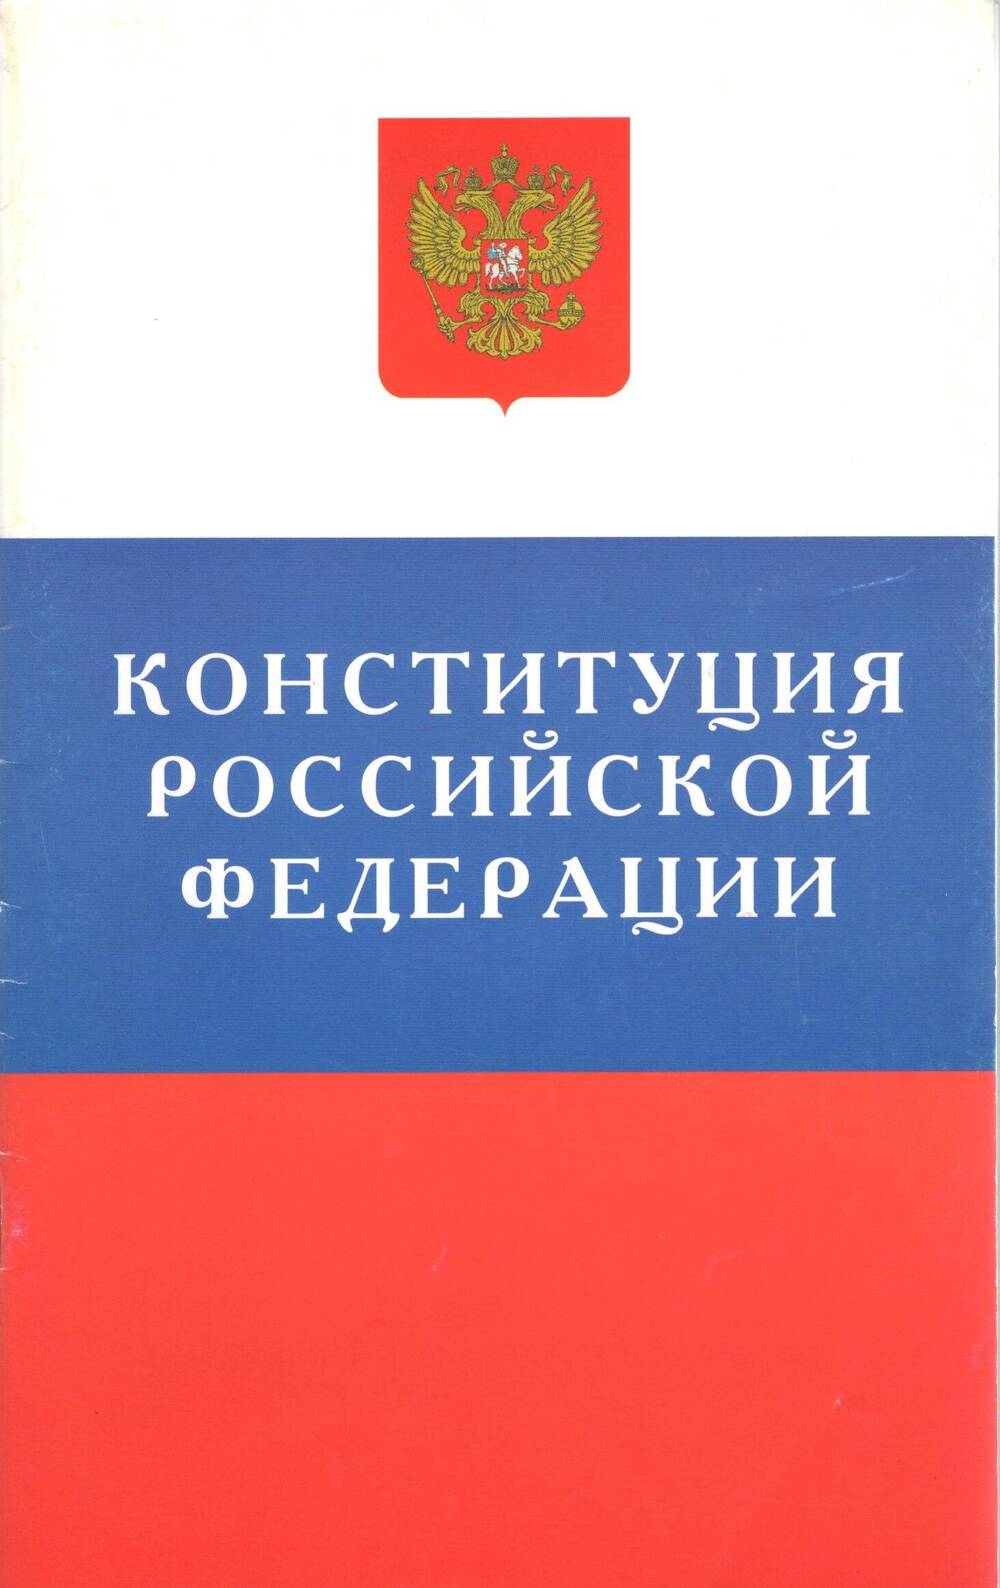 Брошюра Конституция Российской Федерации